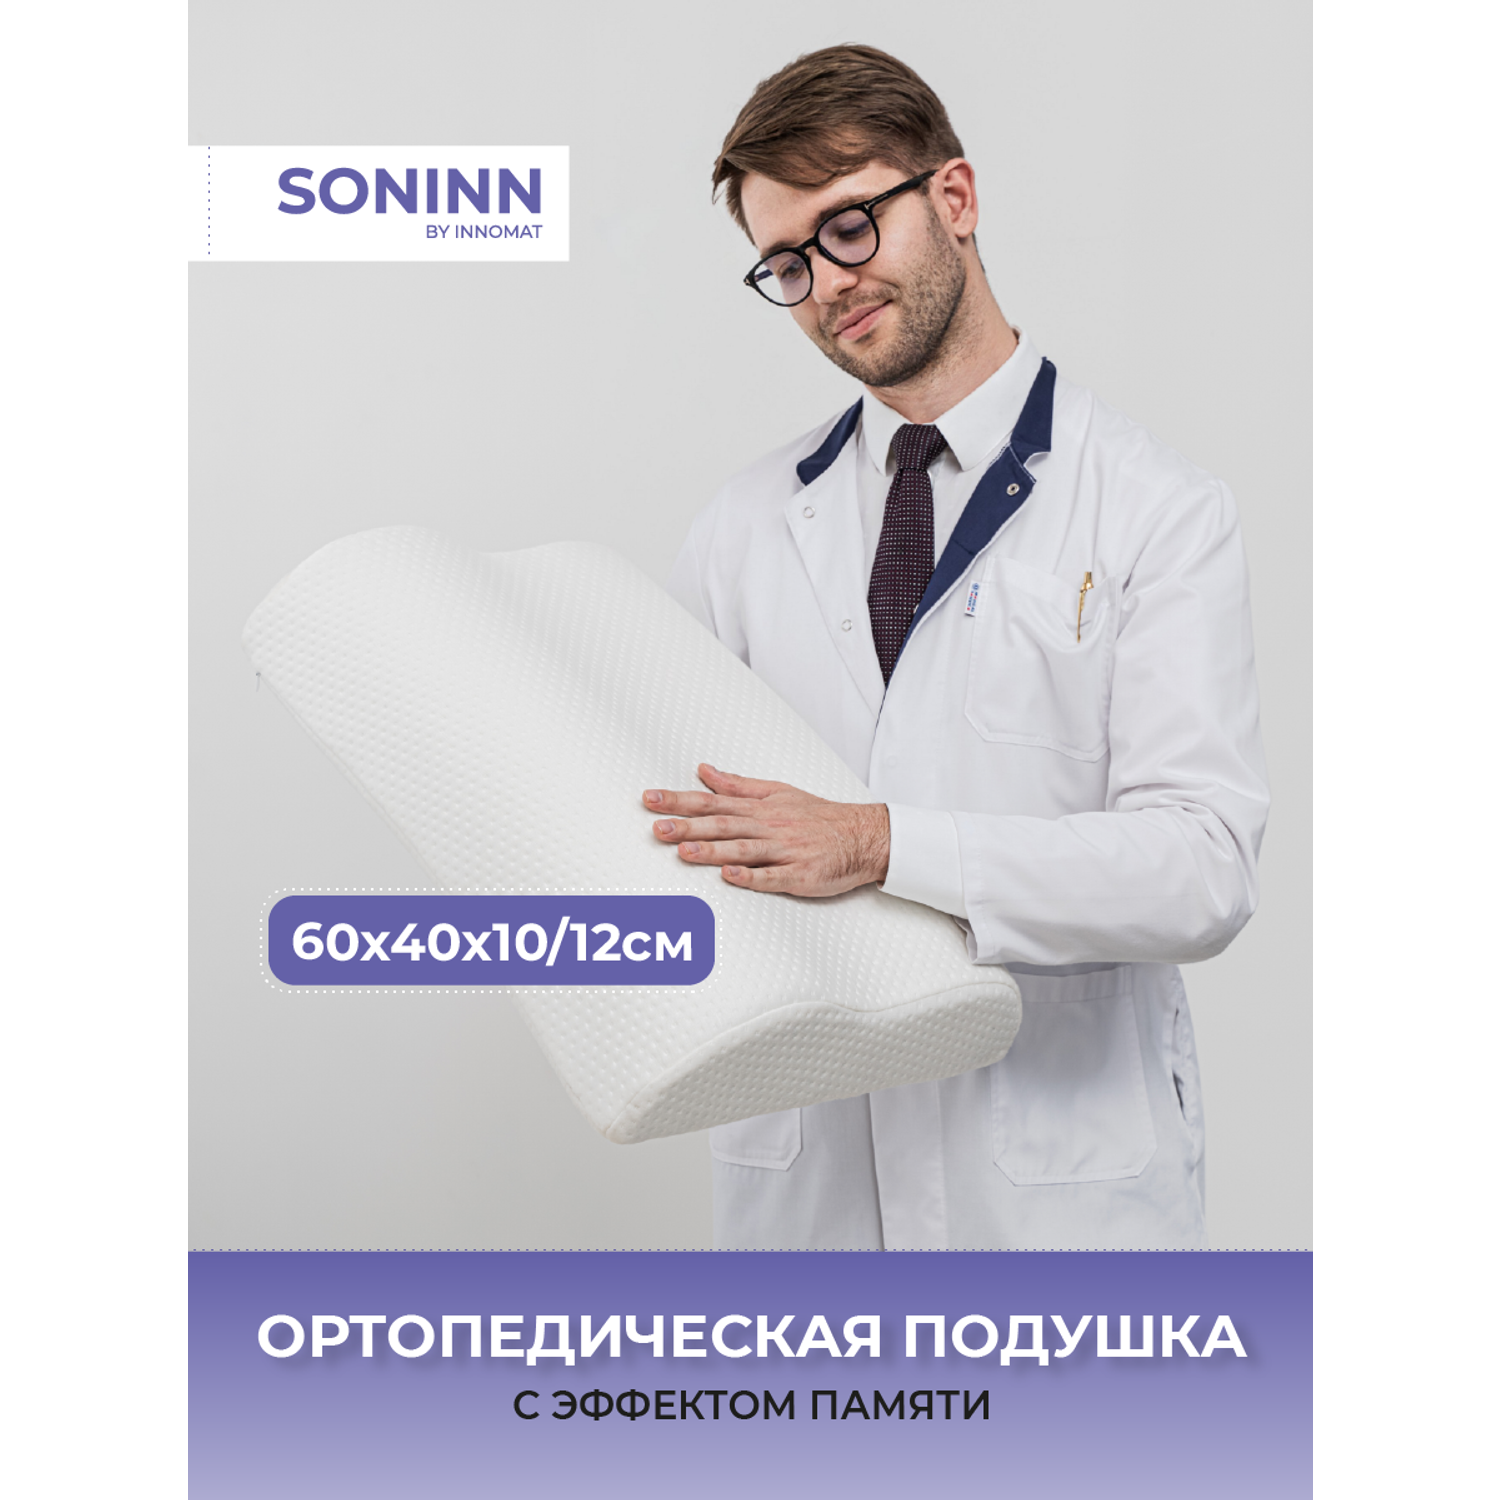 Ортопедическая подушка Innomat Soninn orto 60x40x10/12 - фото 2